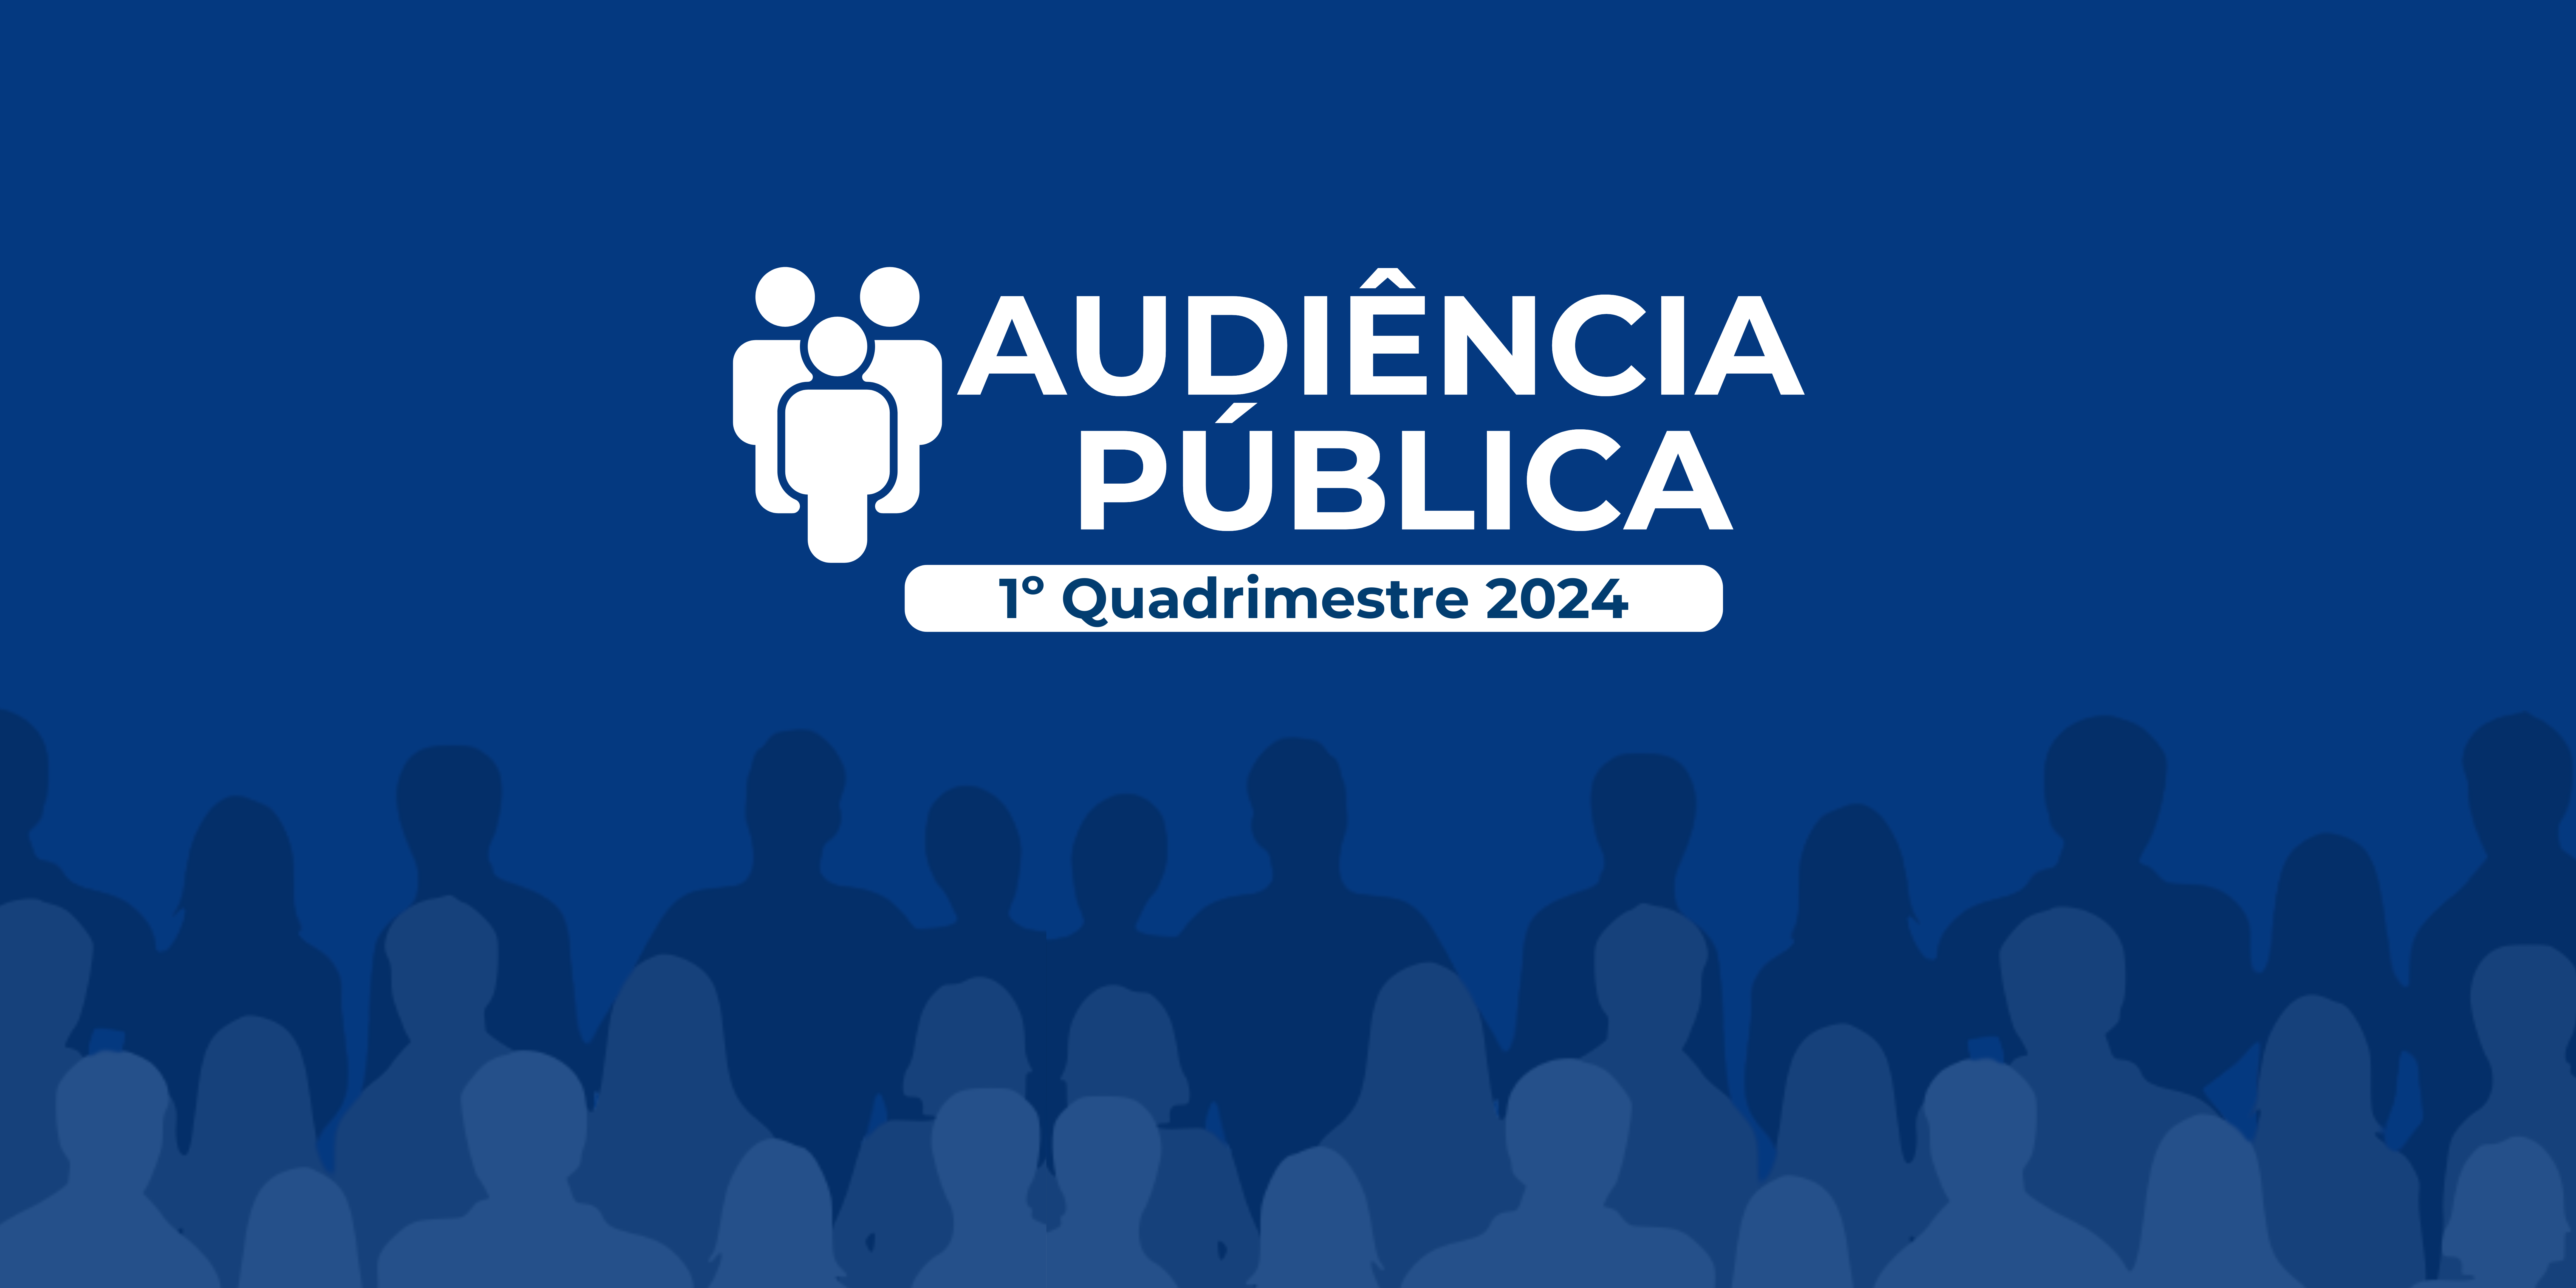 A Prefeitura de Fundão convida para a Audiência Pública - 1º Quadrimestre 